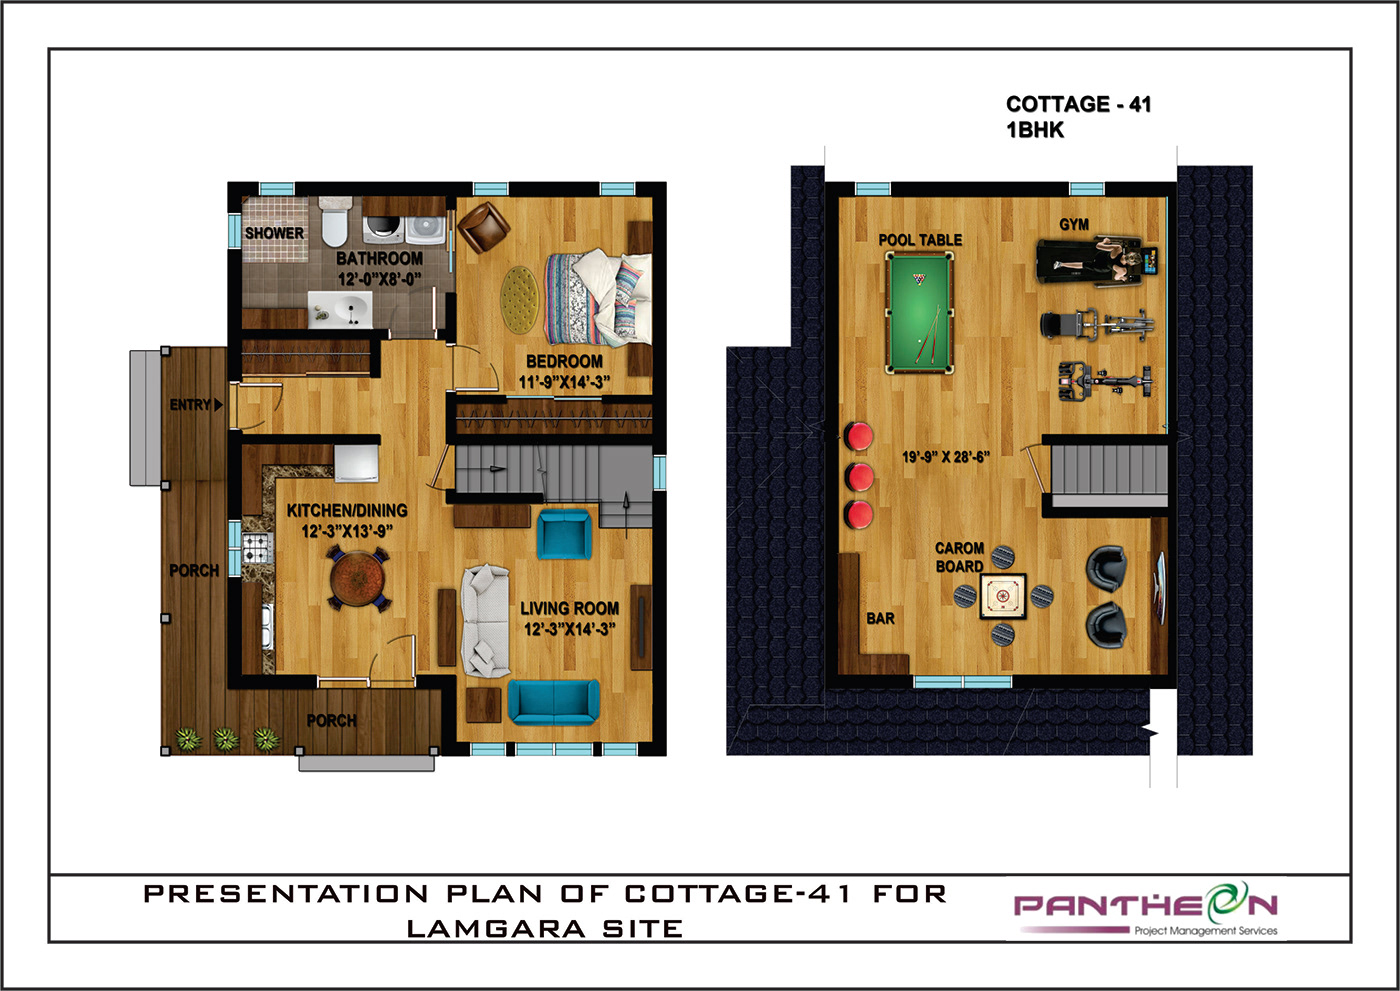 Cottages Digital Art  Drawing  house interior design  plans presentation Render residential Villas